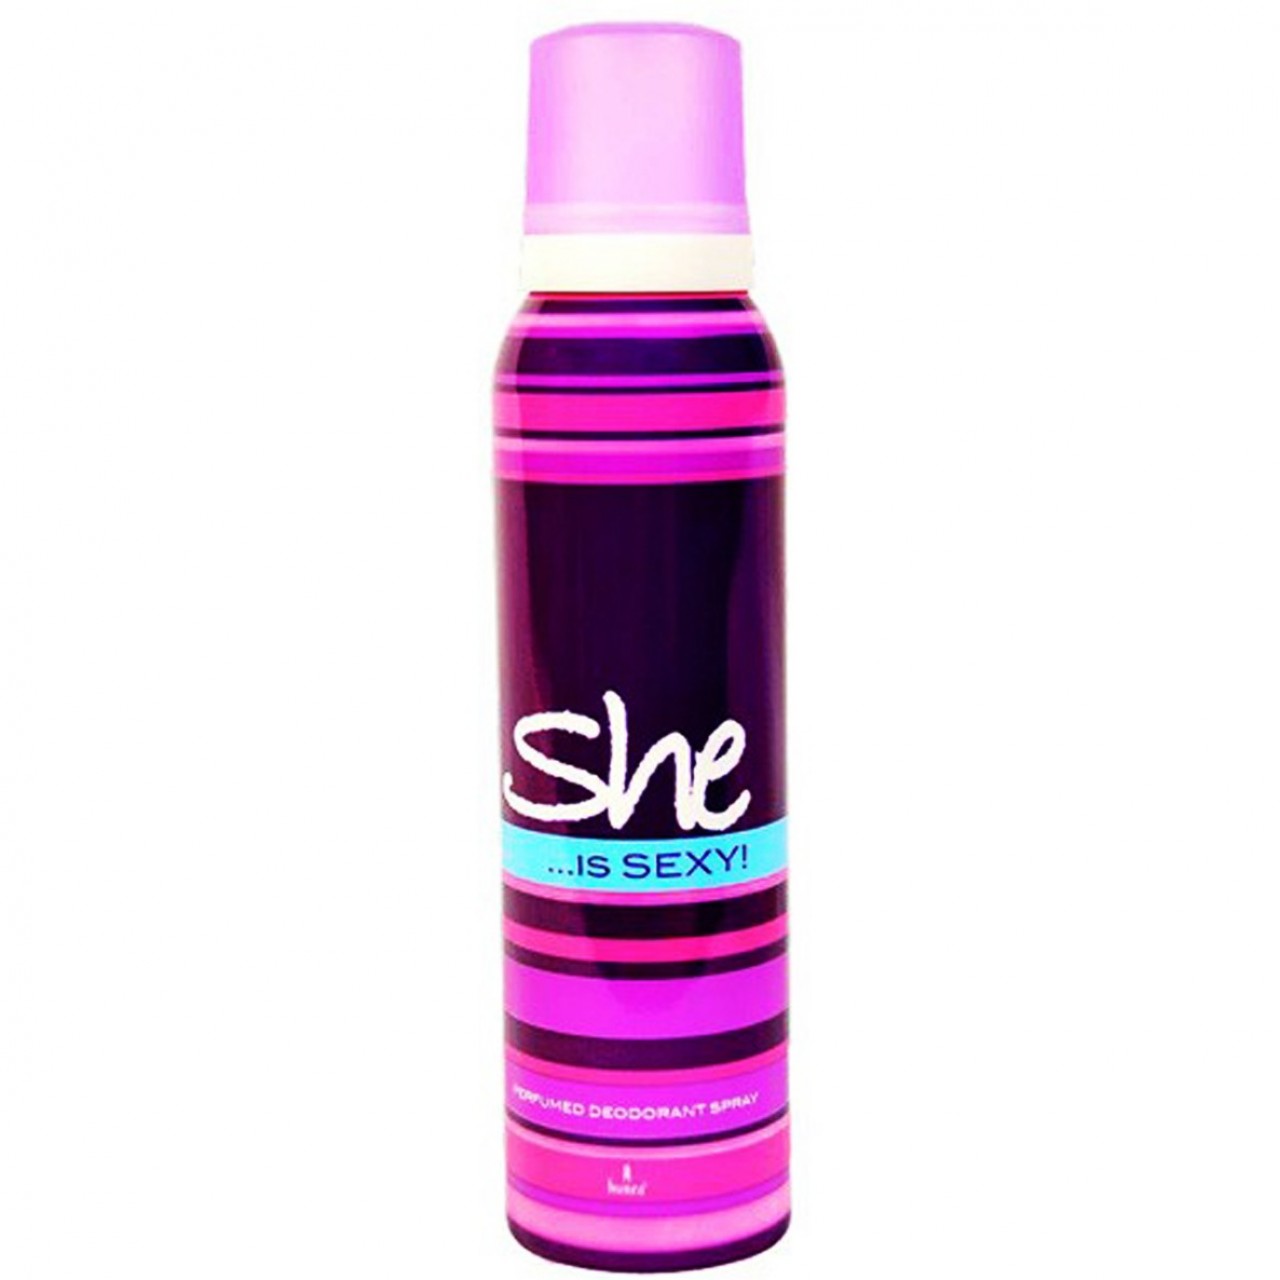 She is Sexy Body Spray Deodorant For Women - 200 ml